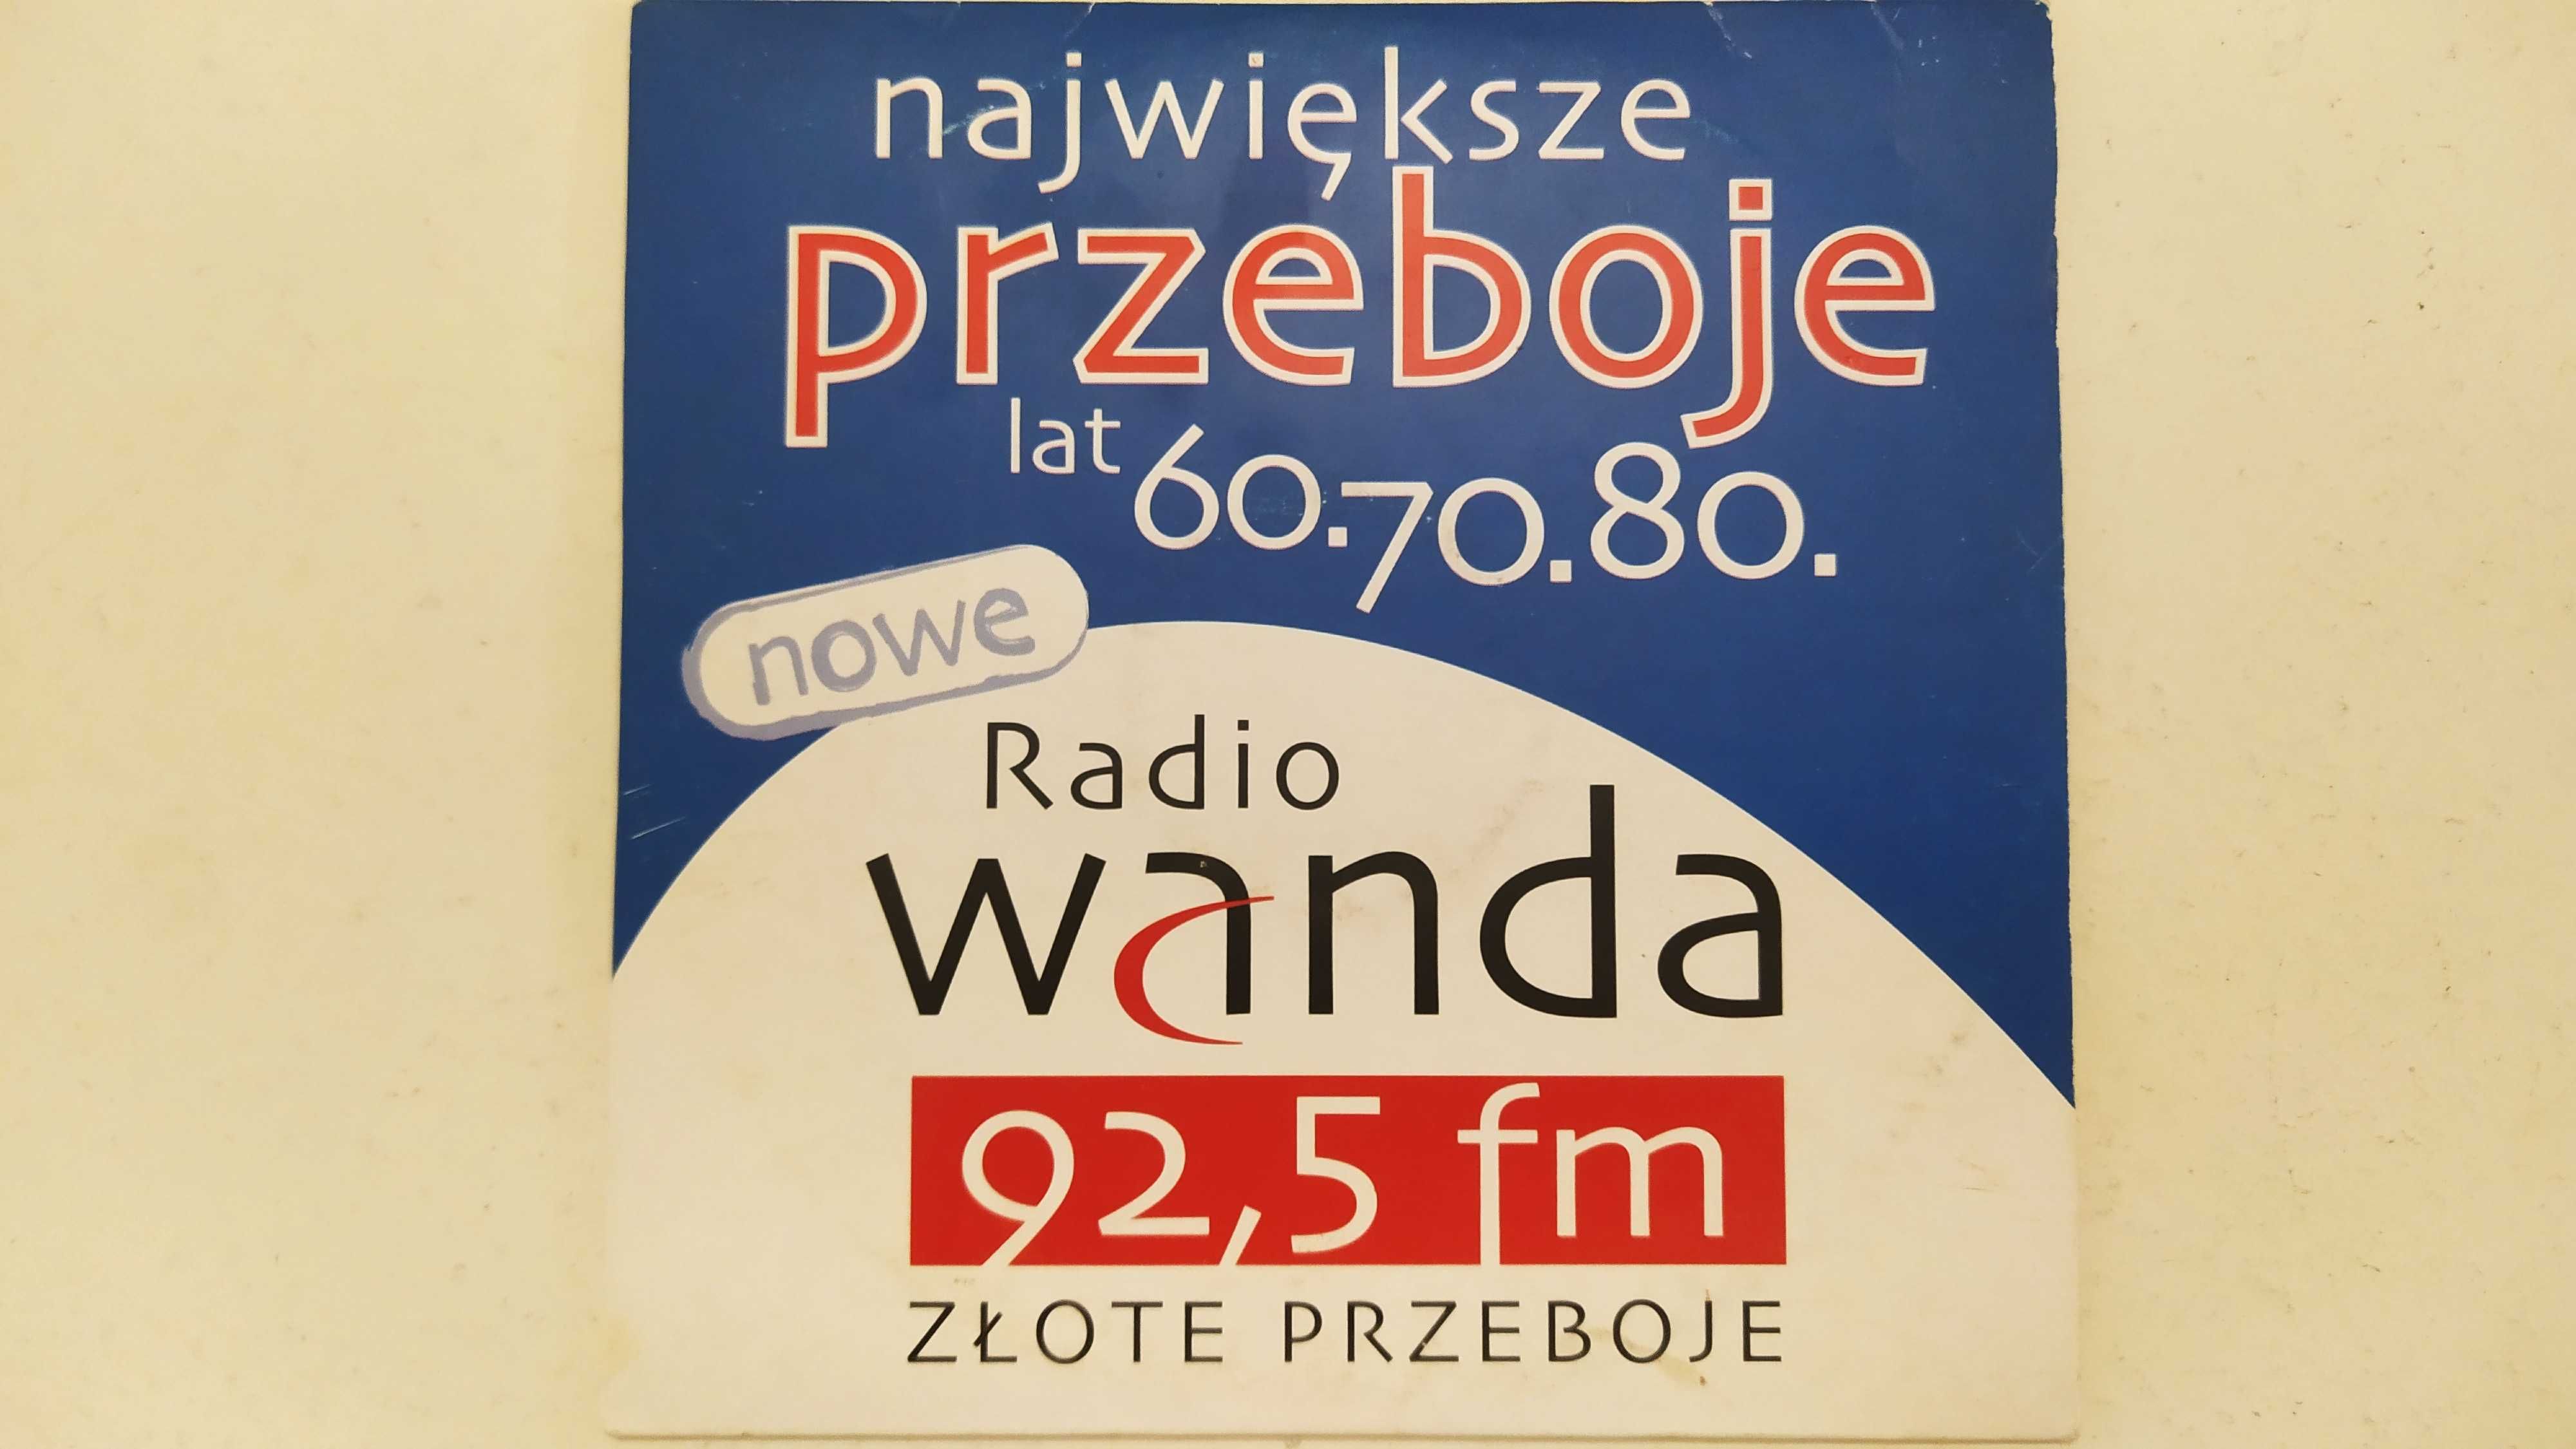 Największe przeboje lat 60 70 80 nowe Radio Wanda CD koperta Breakout